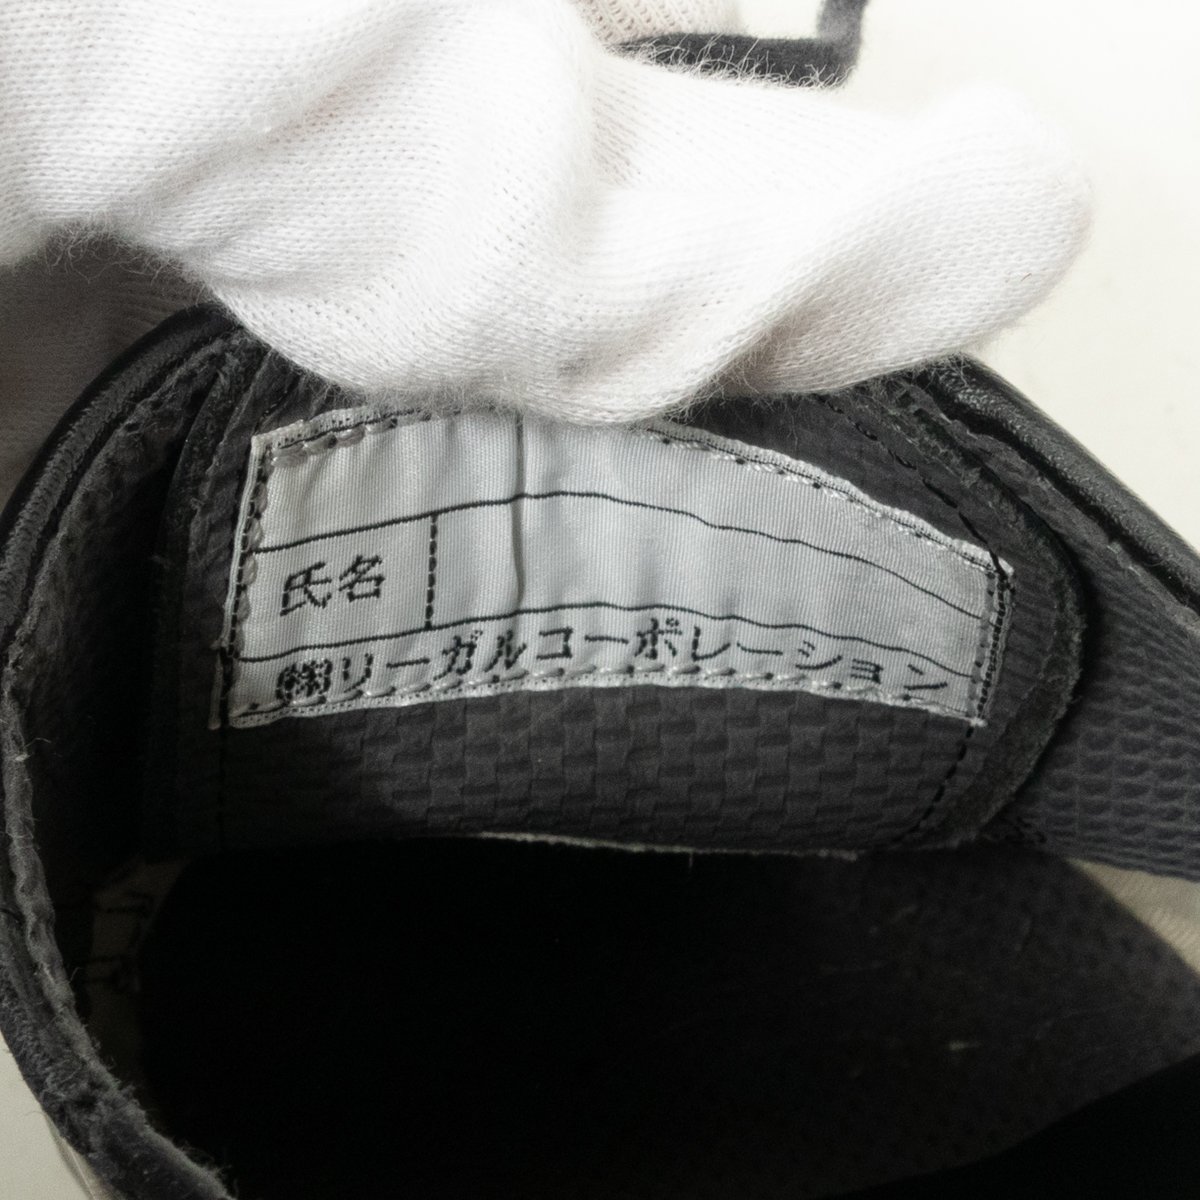 REGAL PROFESSIONAL GEAR プロフェッショナルギア リーガル ビジネスシューズ ブラック 黒 24.5cm レザー 日本製 メンズ シンプル 紳士靴_画像10